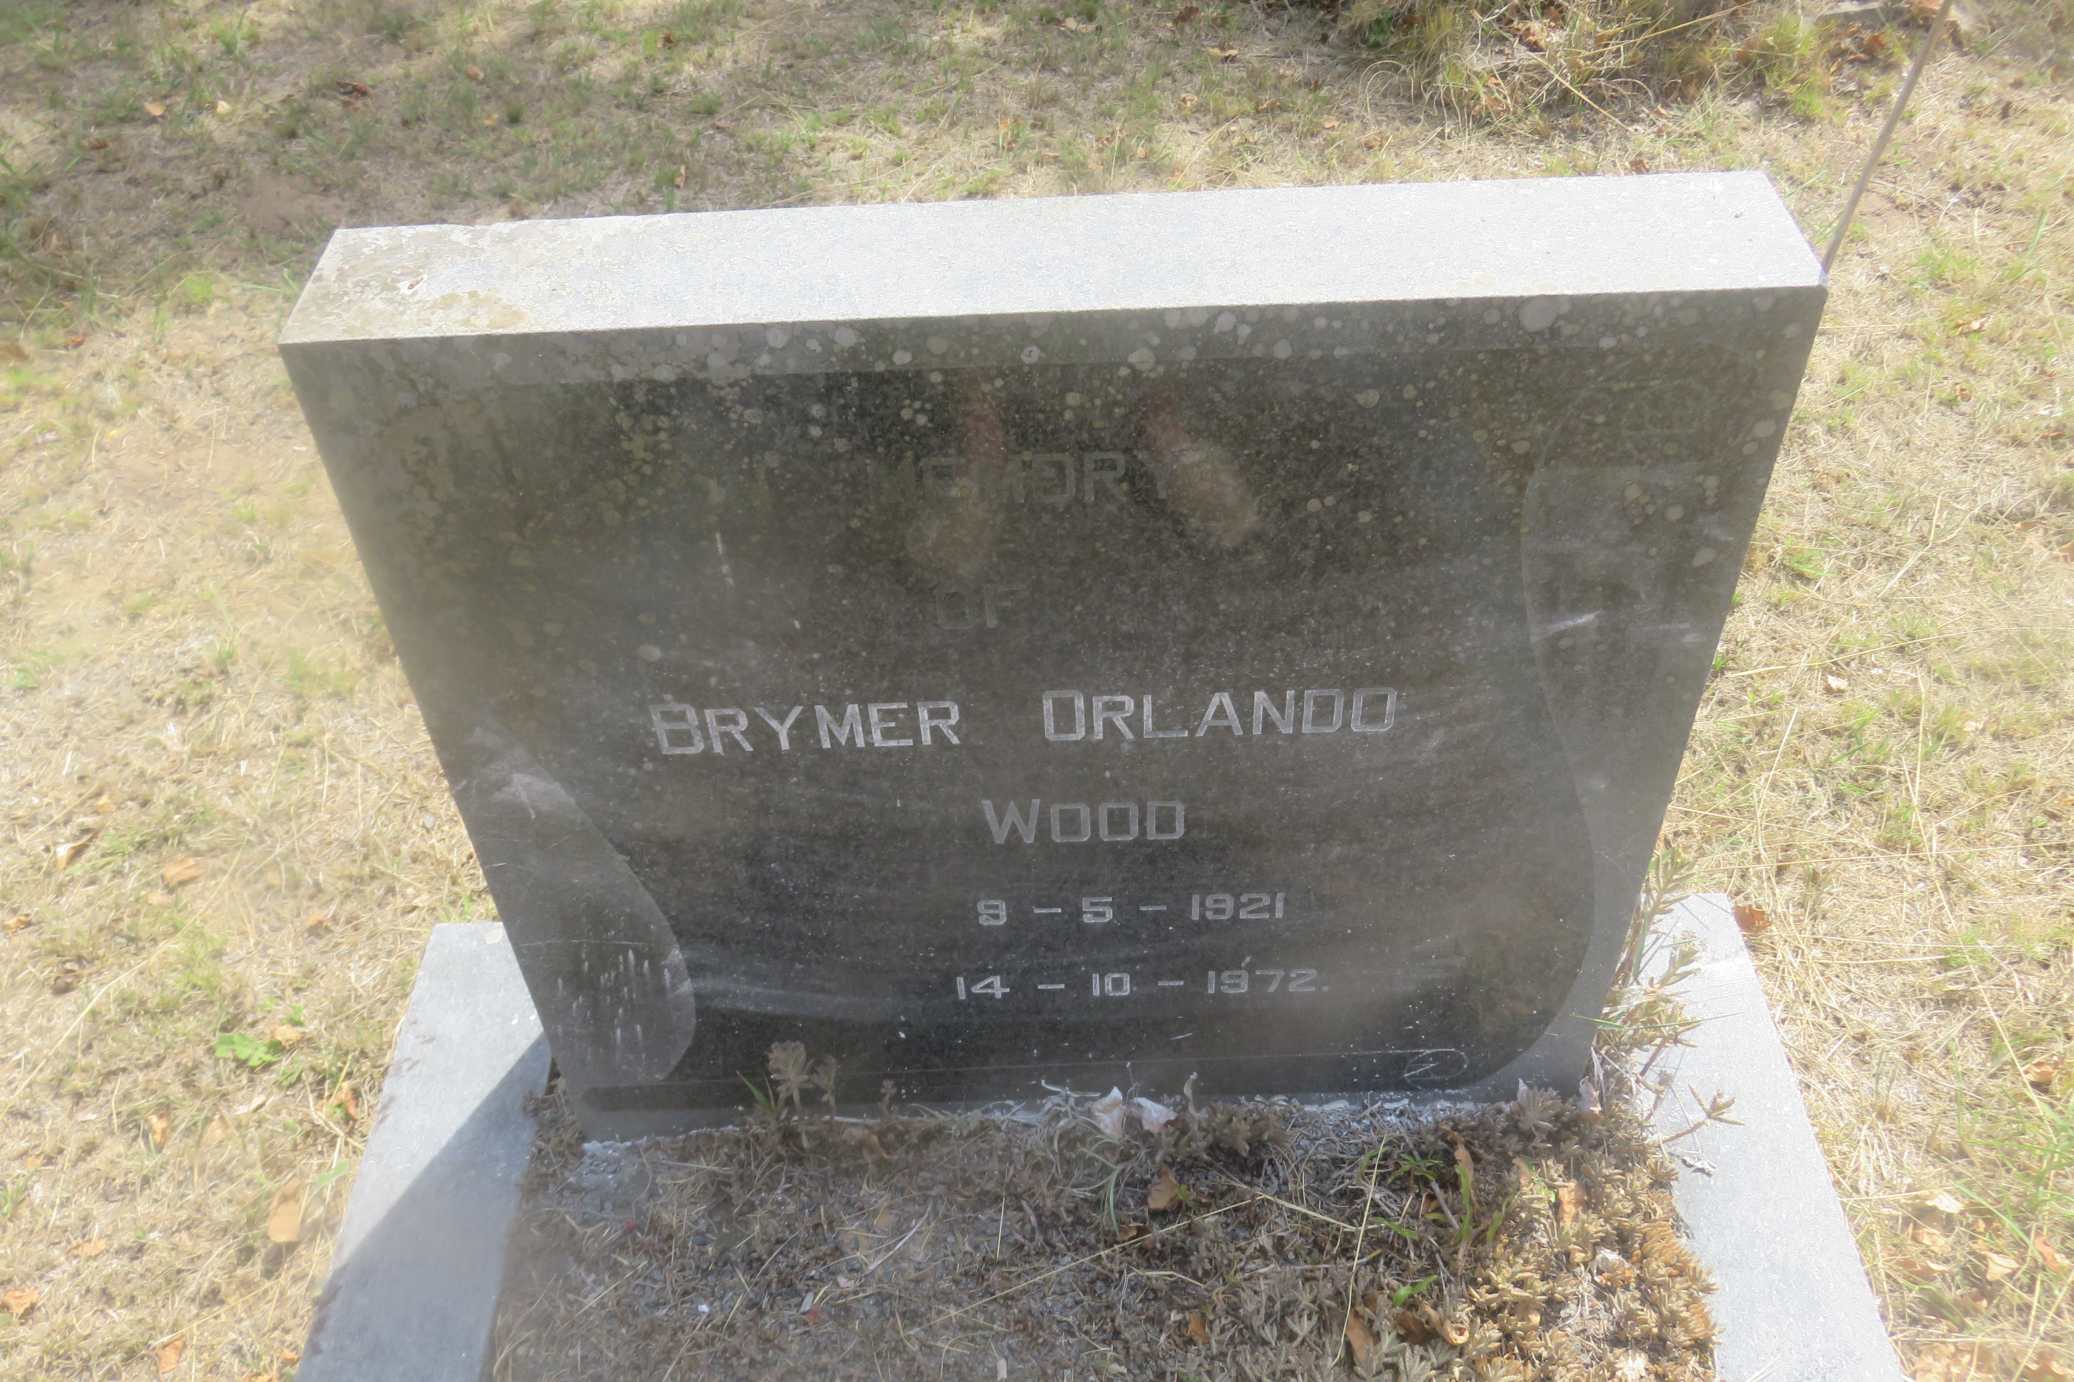 WOOD Brymer Orlando 1921-1972